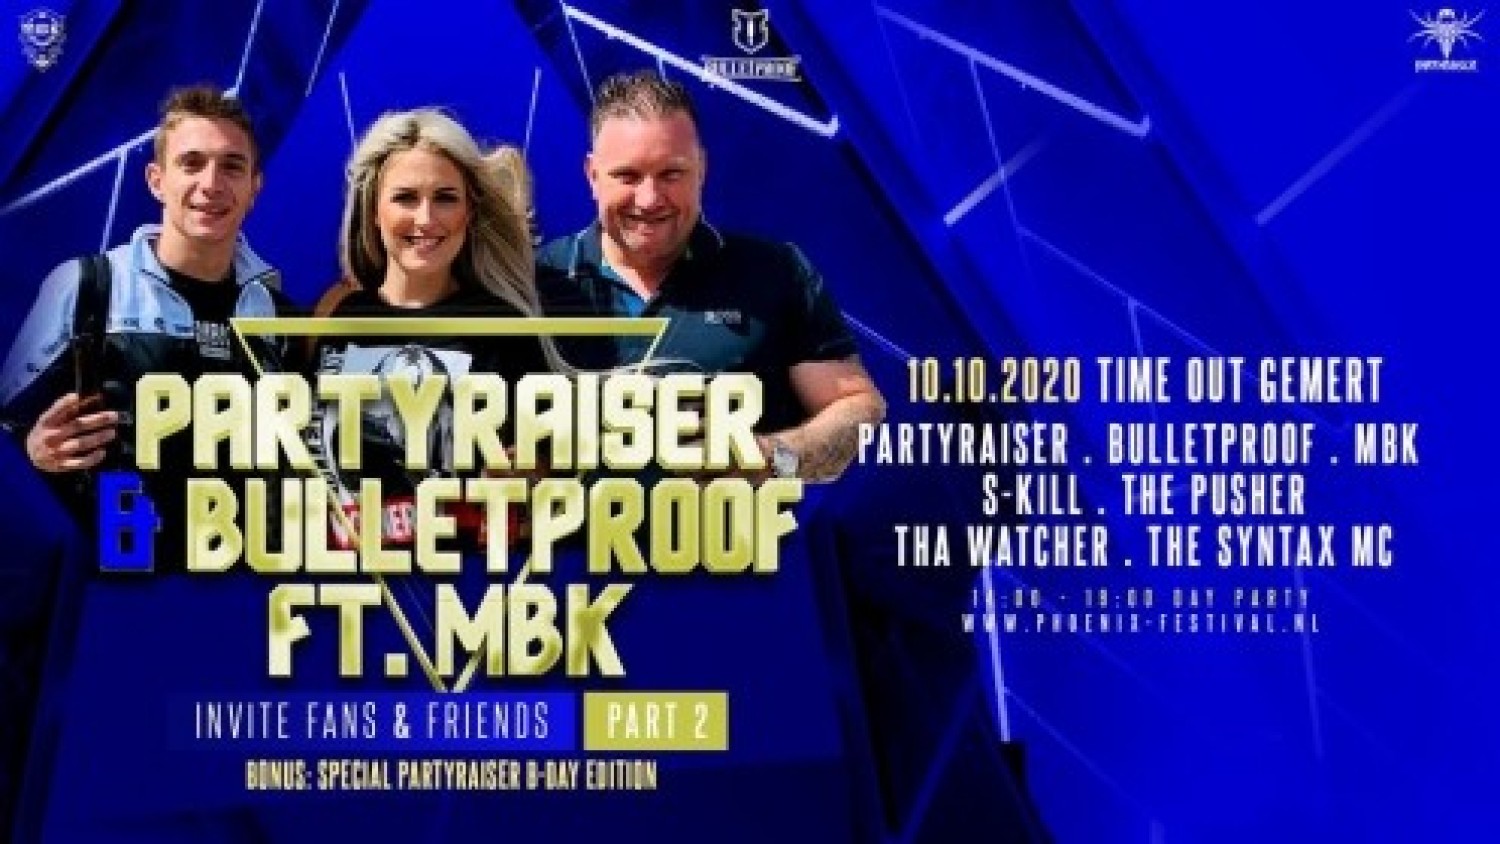 Partyraiser & Bulletproof ft MBK invite Fans & Friends